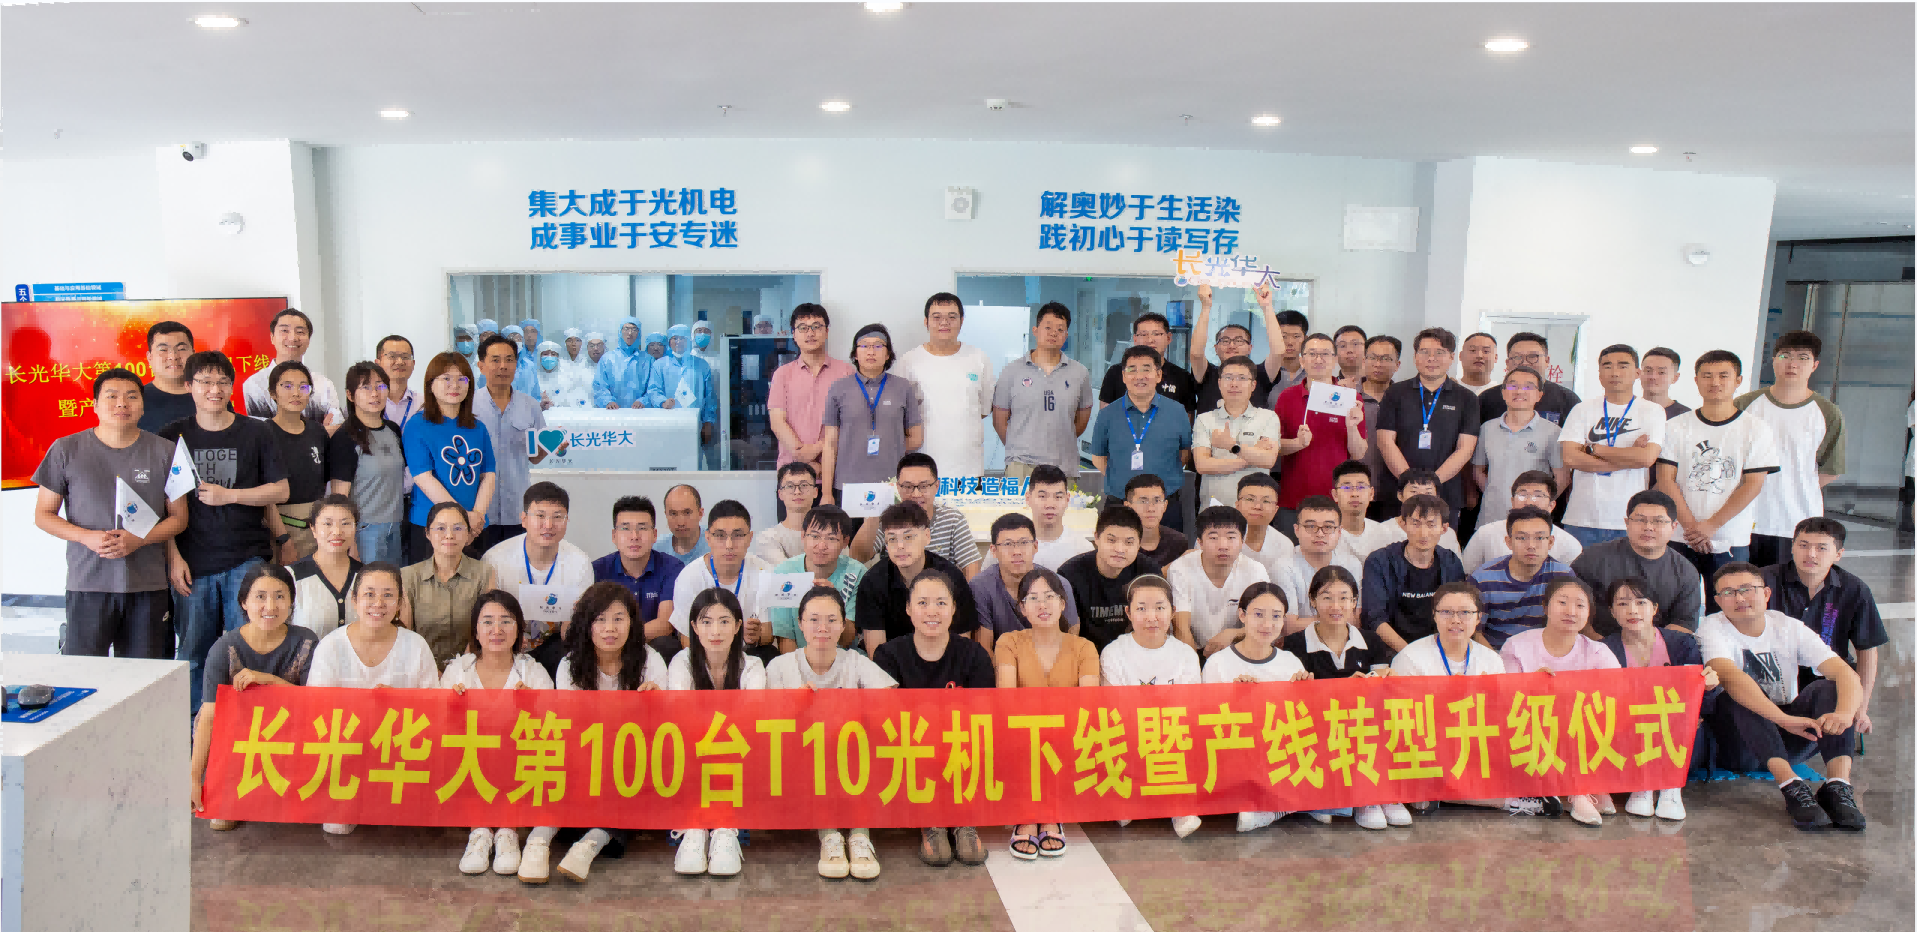 长光华大举行第100台T10光机下线暨产线转型升级仪式